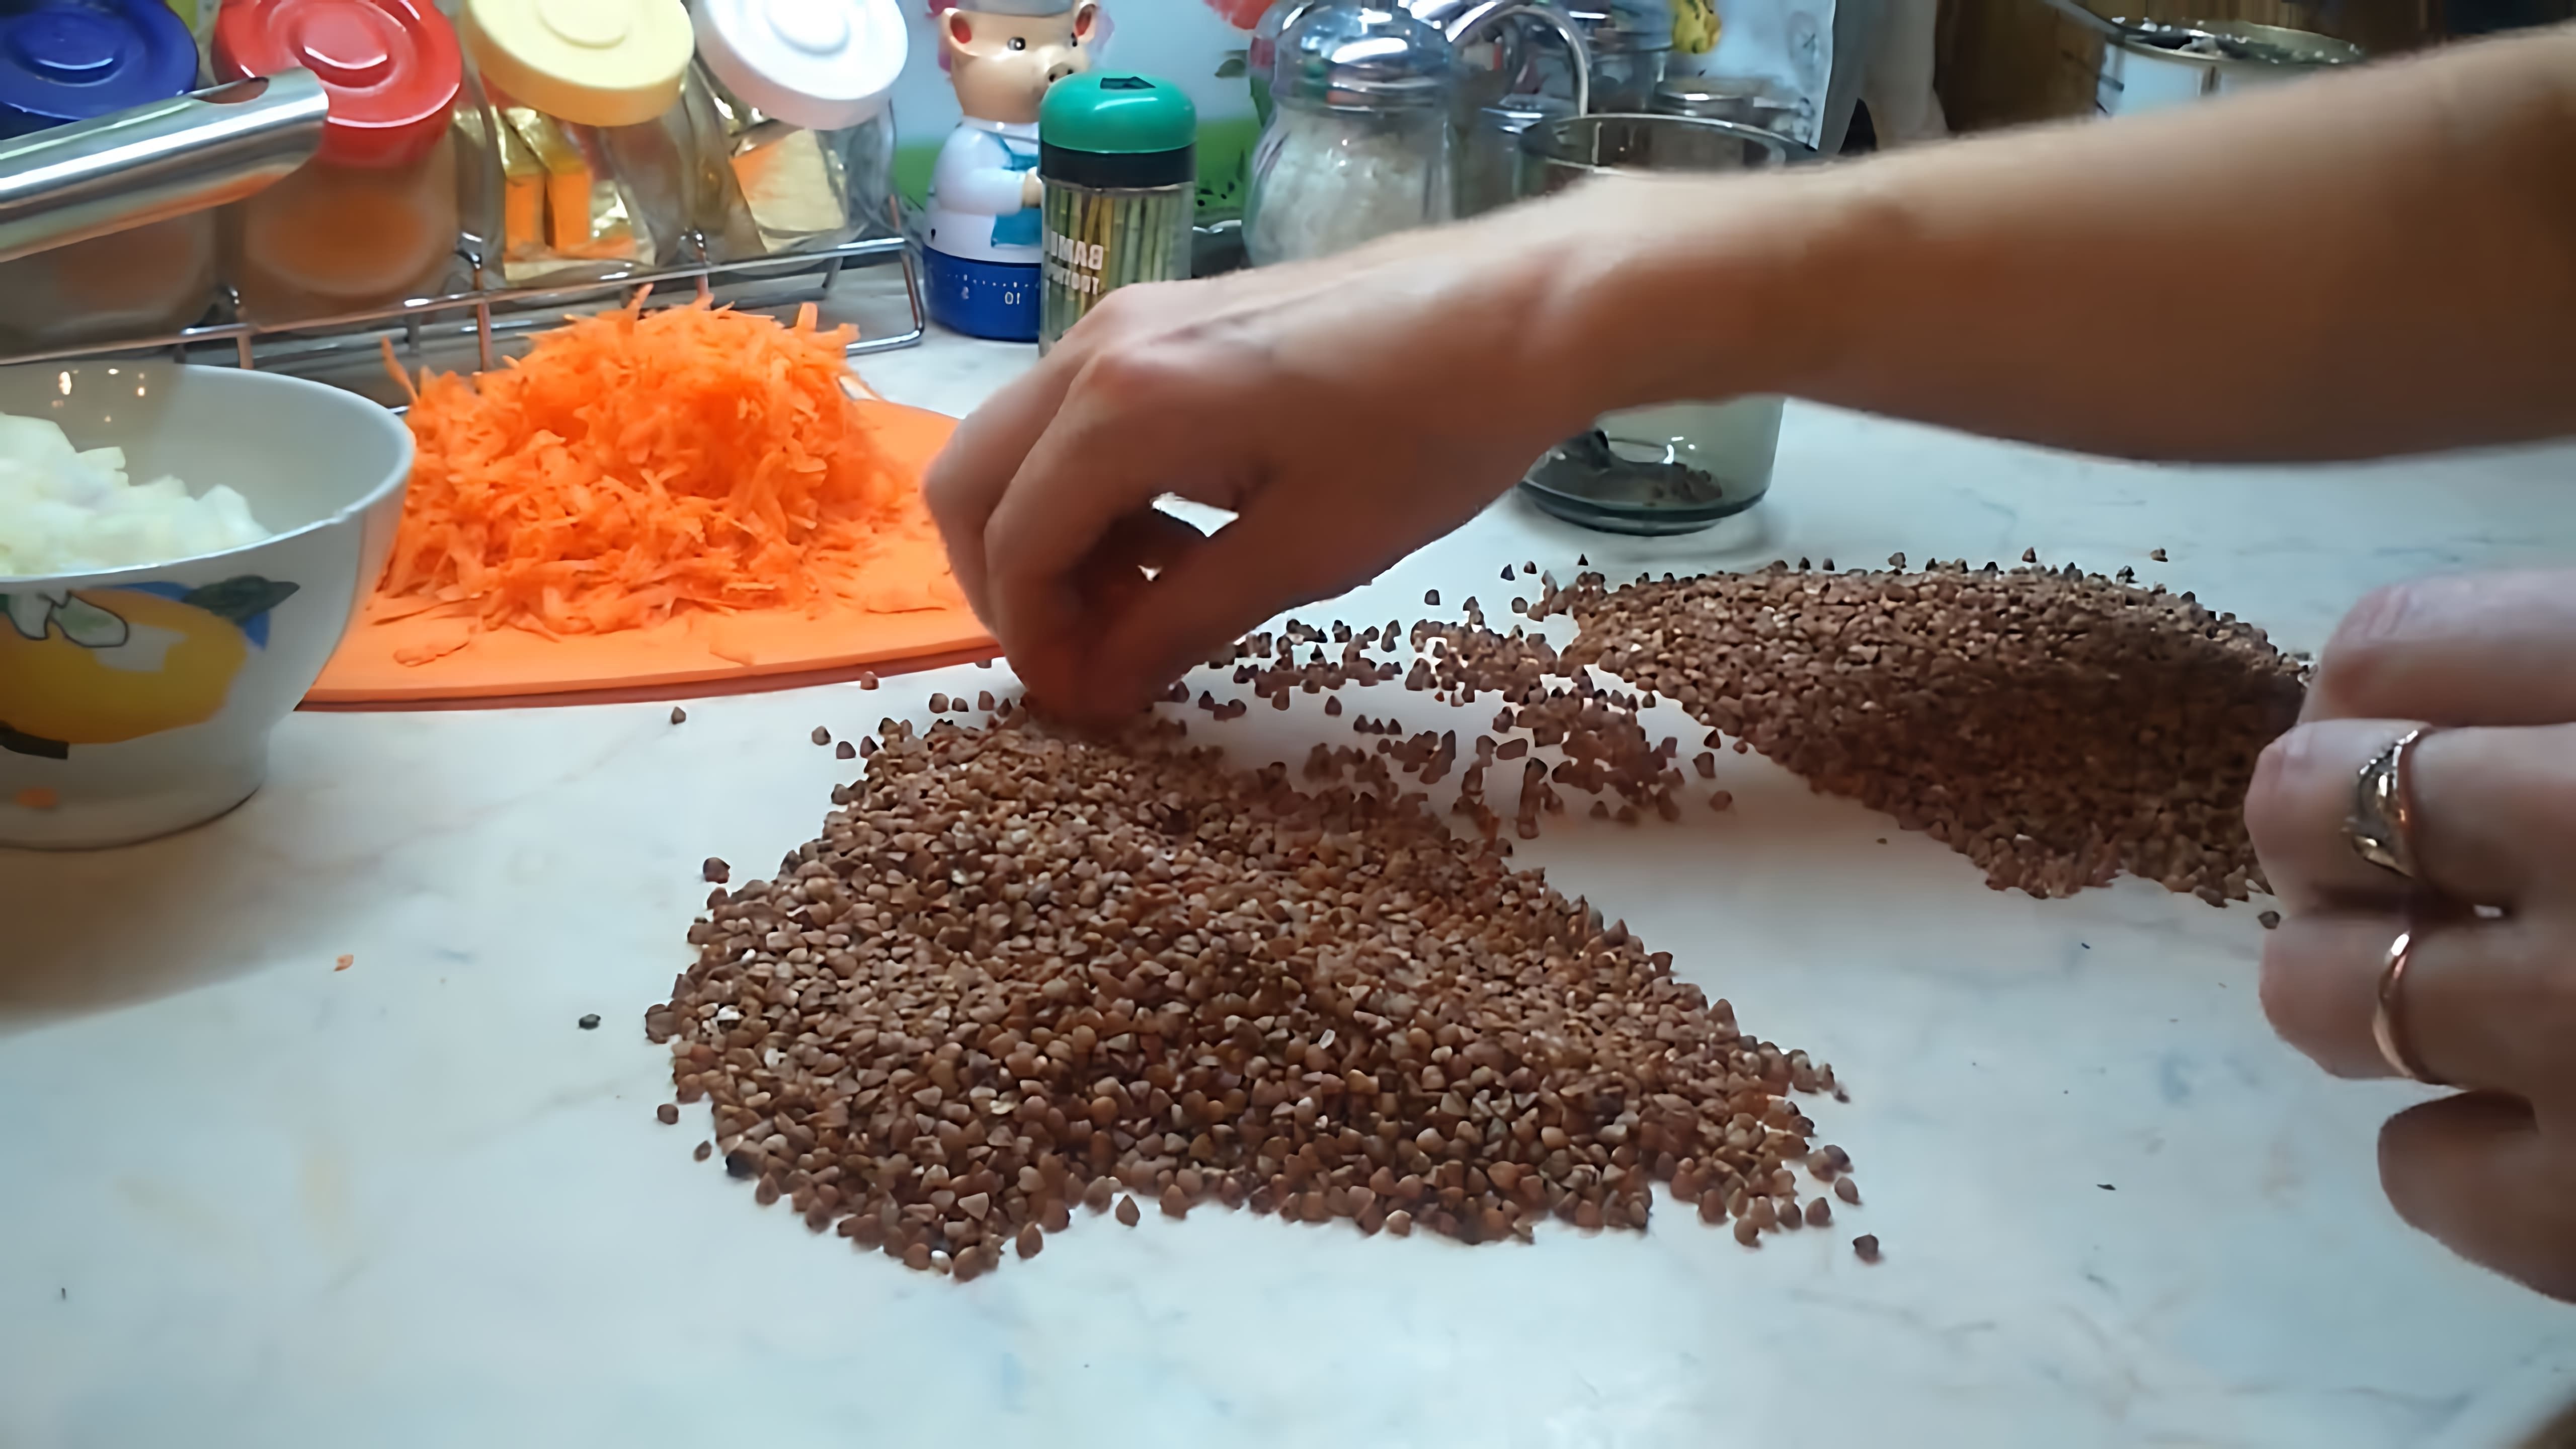 В этом видео демонстрируется процесс приготовления гречневой каши с тушенкой